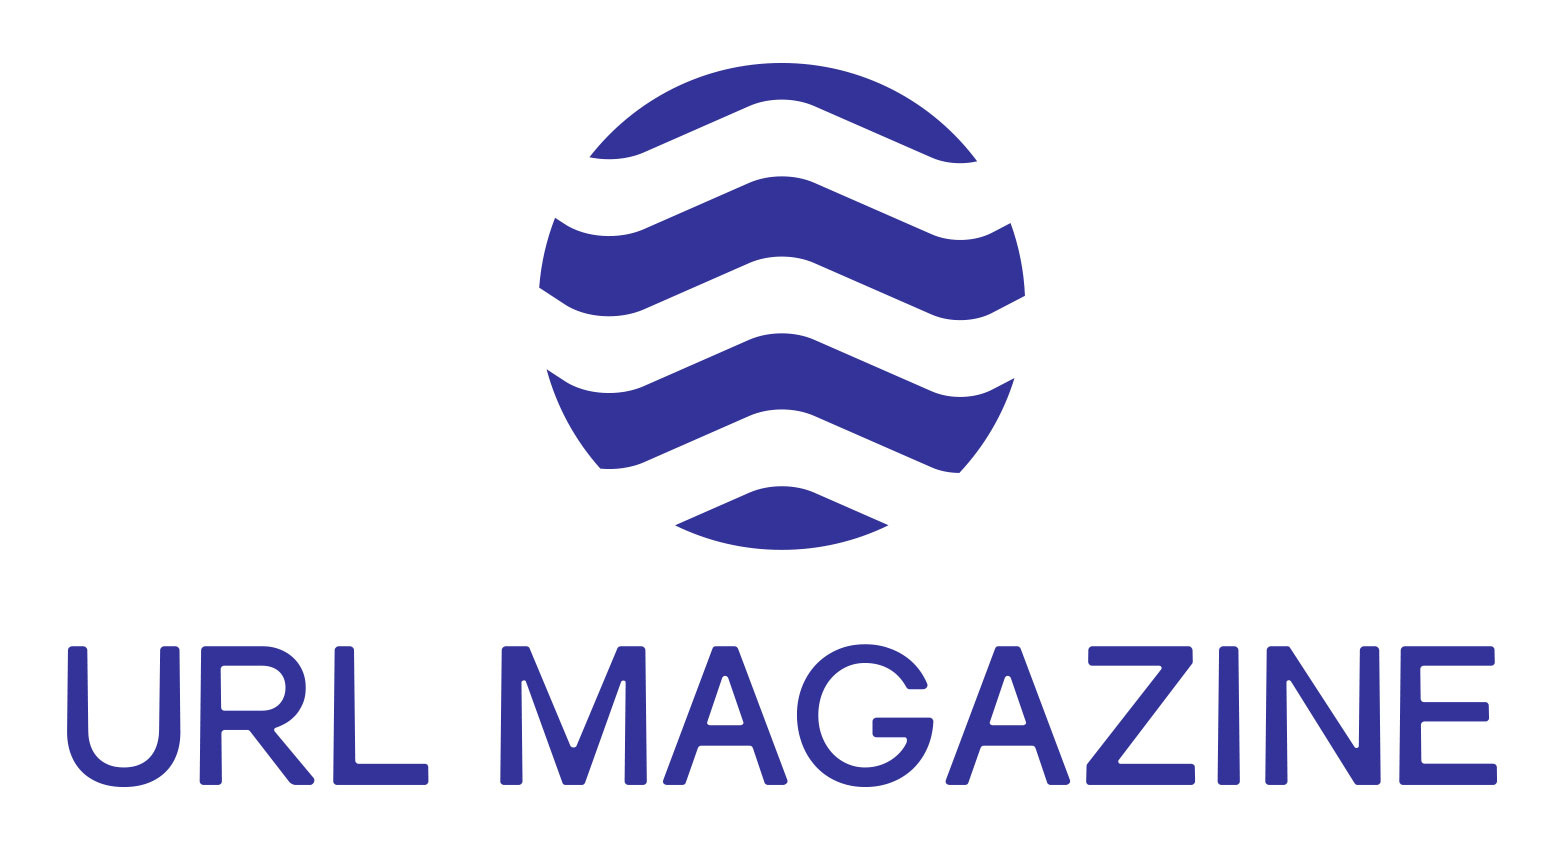 url magazine logo